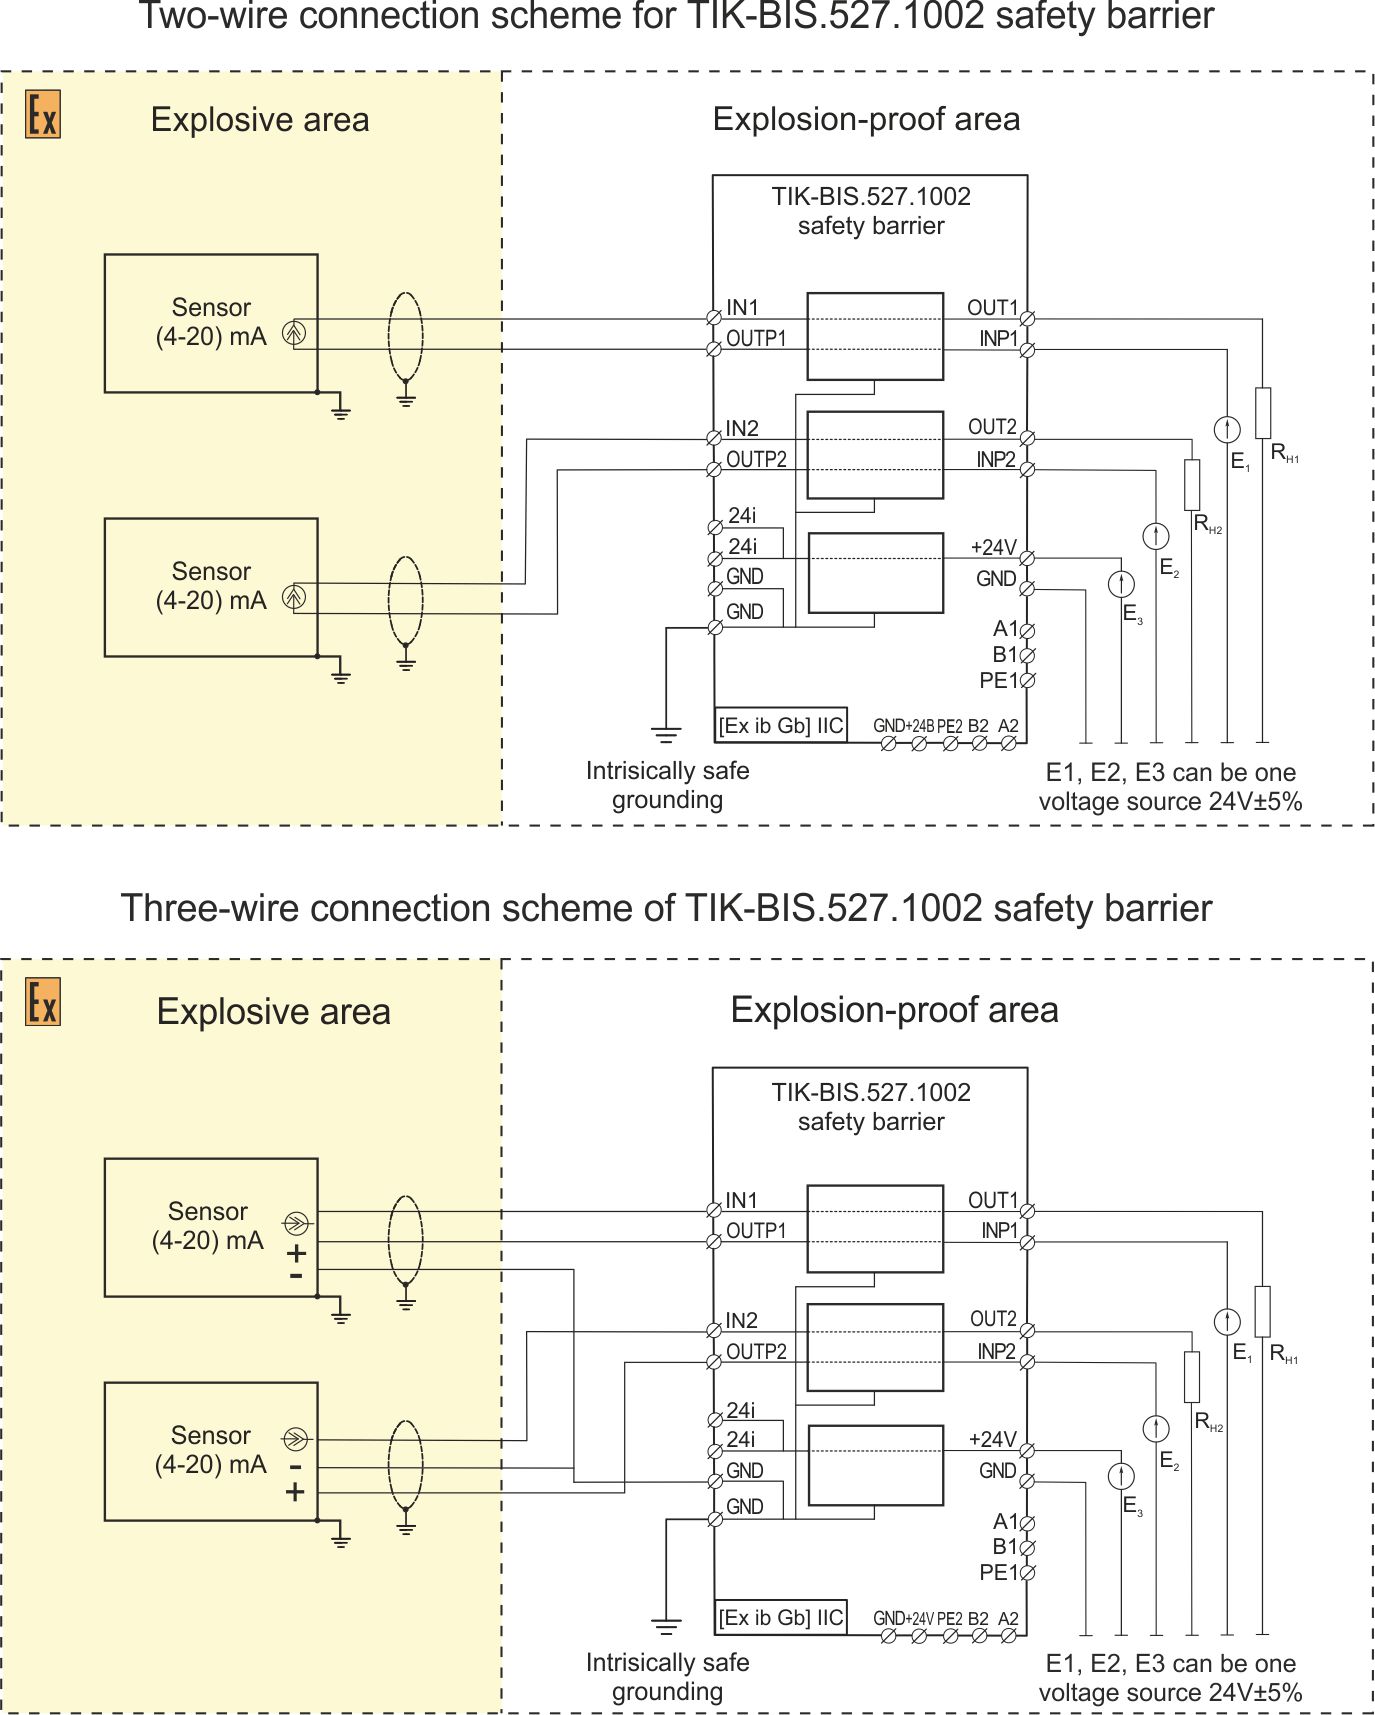 Safety barrier TIK-BIS.527.1002